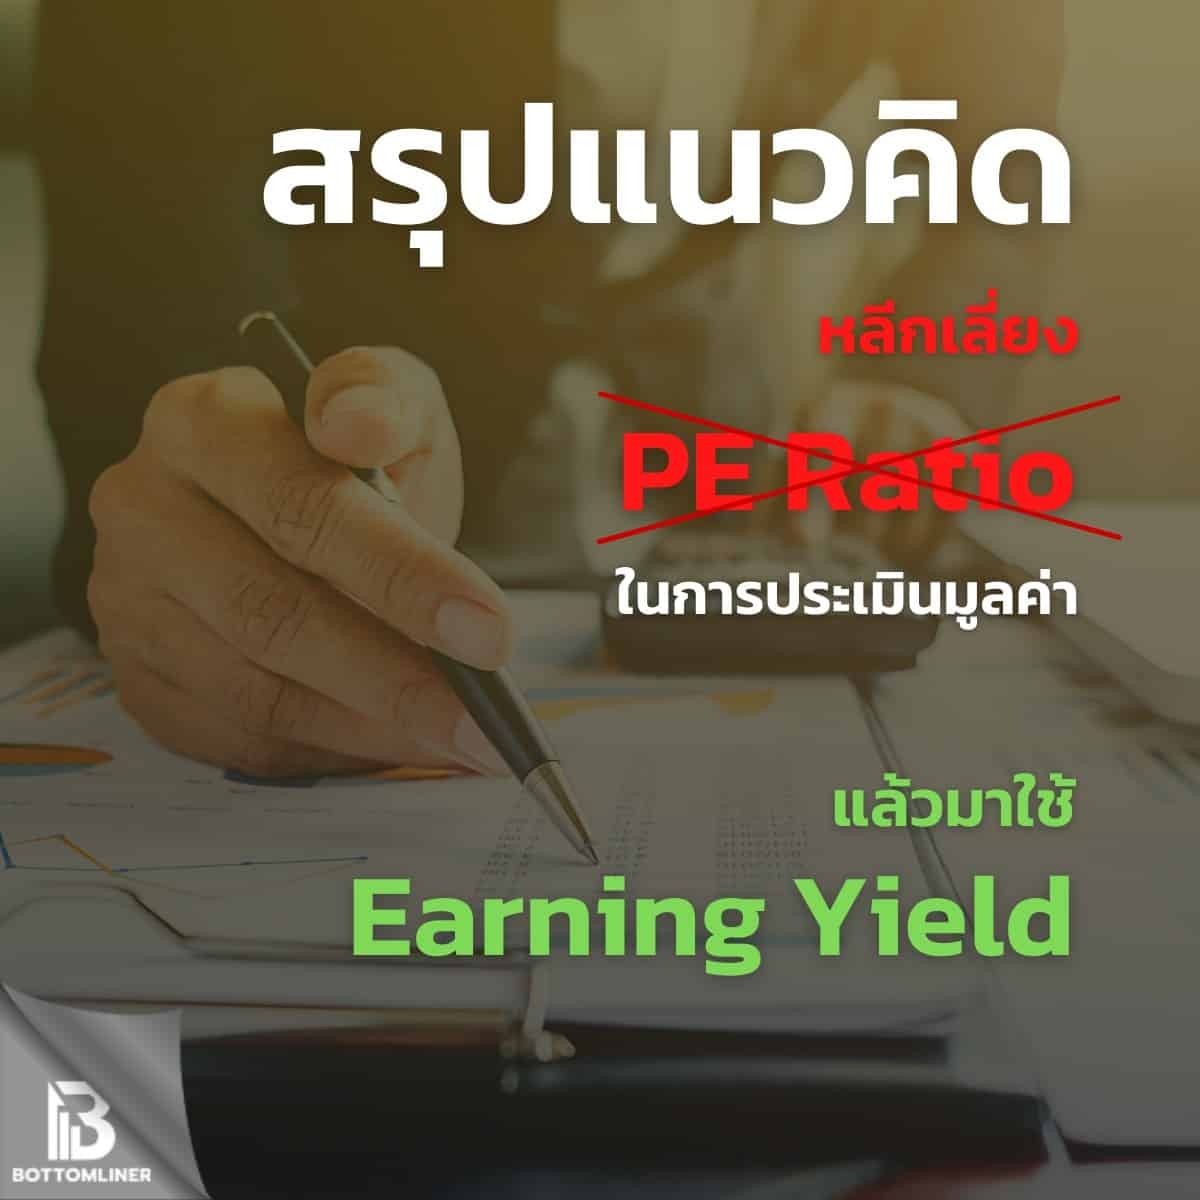 #สรุป แนวคิด หลีกเลี่ยงการใช้ PE Ratio ในการประเมินมูลค่า แล้วมาใช้ Earning Yield จะดีกว่าไหม ?